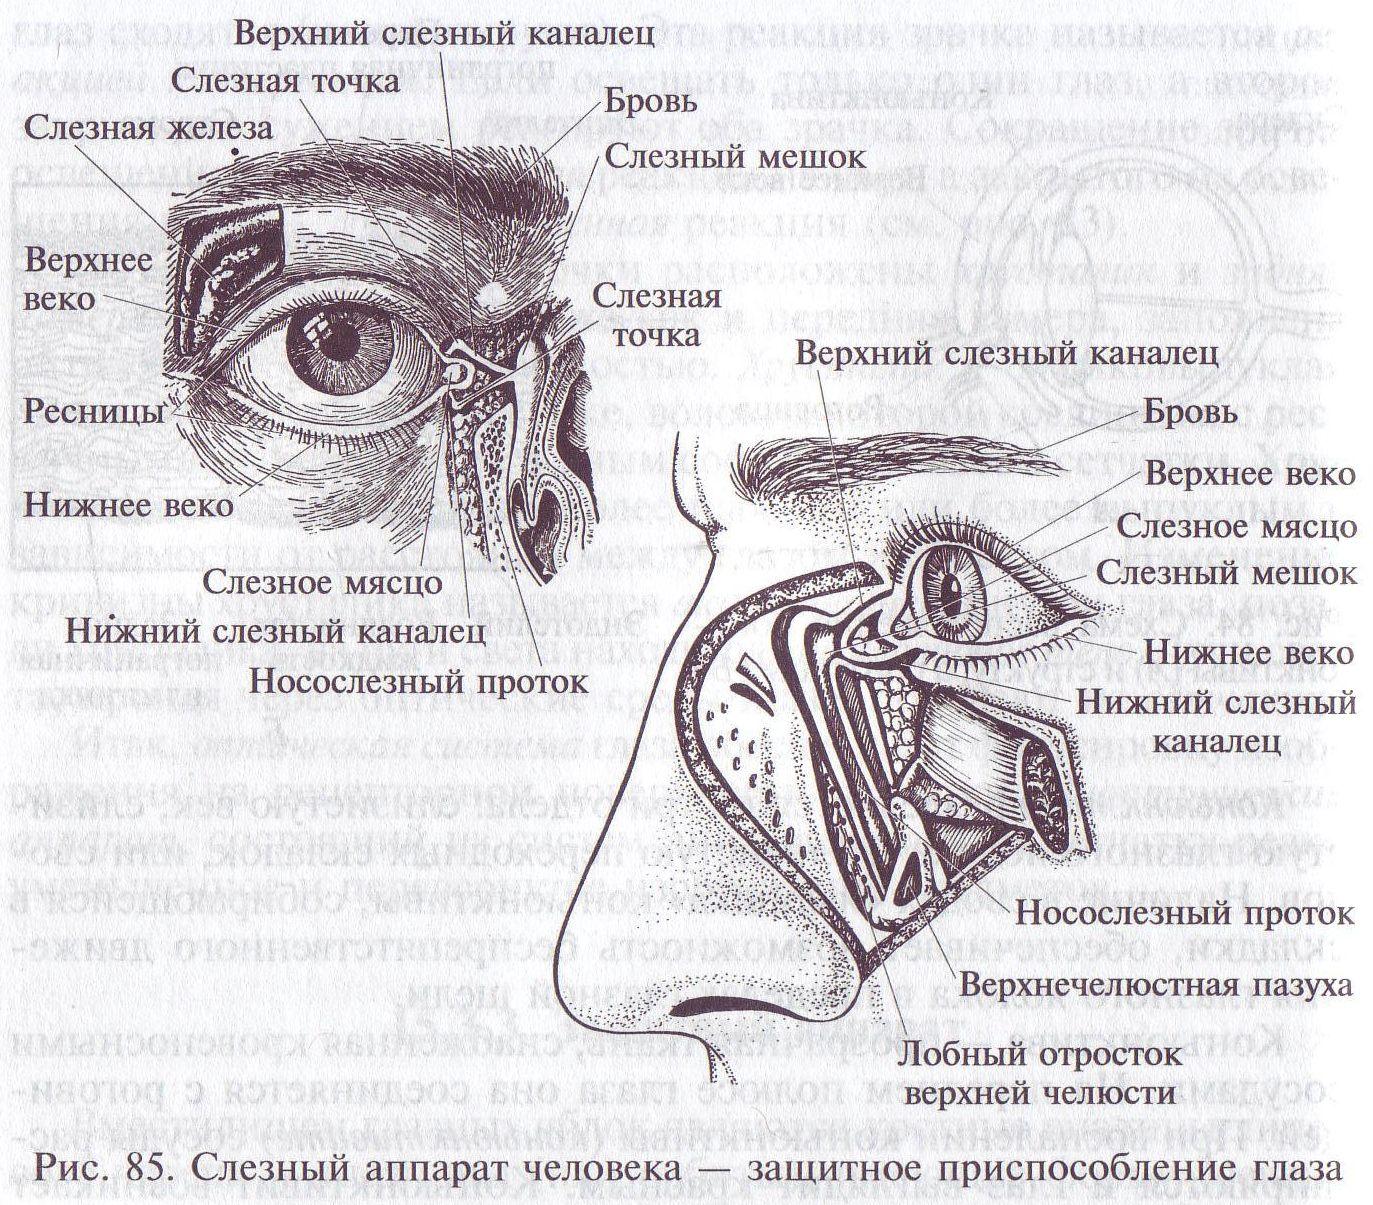 Слезная железа находится. Строение глаза слезный мешок , железа. Слезный аппарат строение анатомия. Слезный аппарат глаза анатомия. Слёзная железа анатомия.